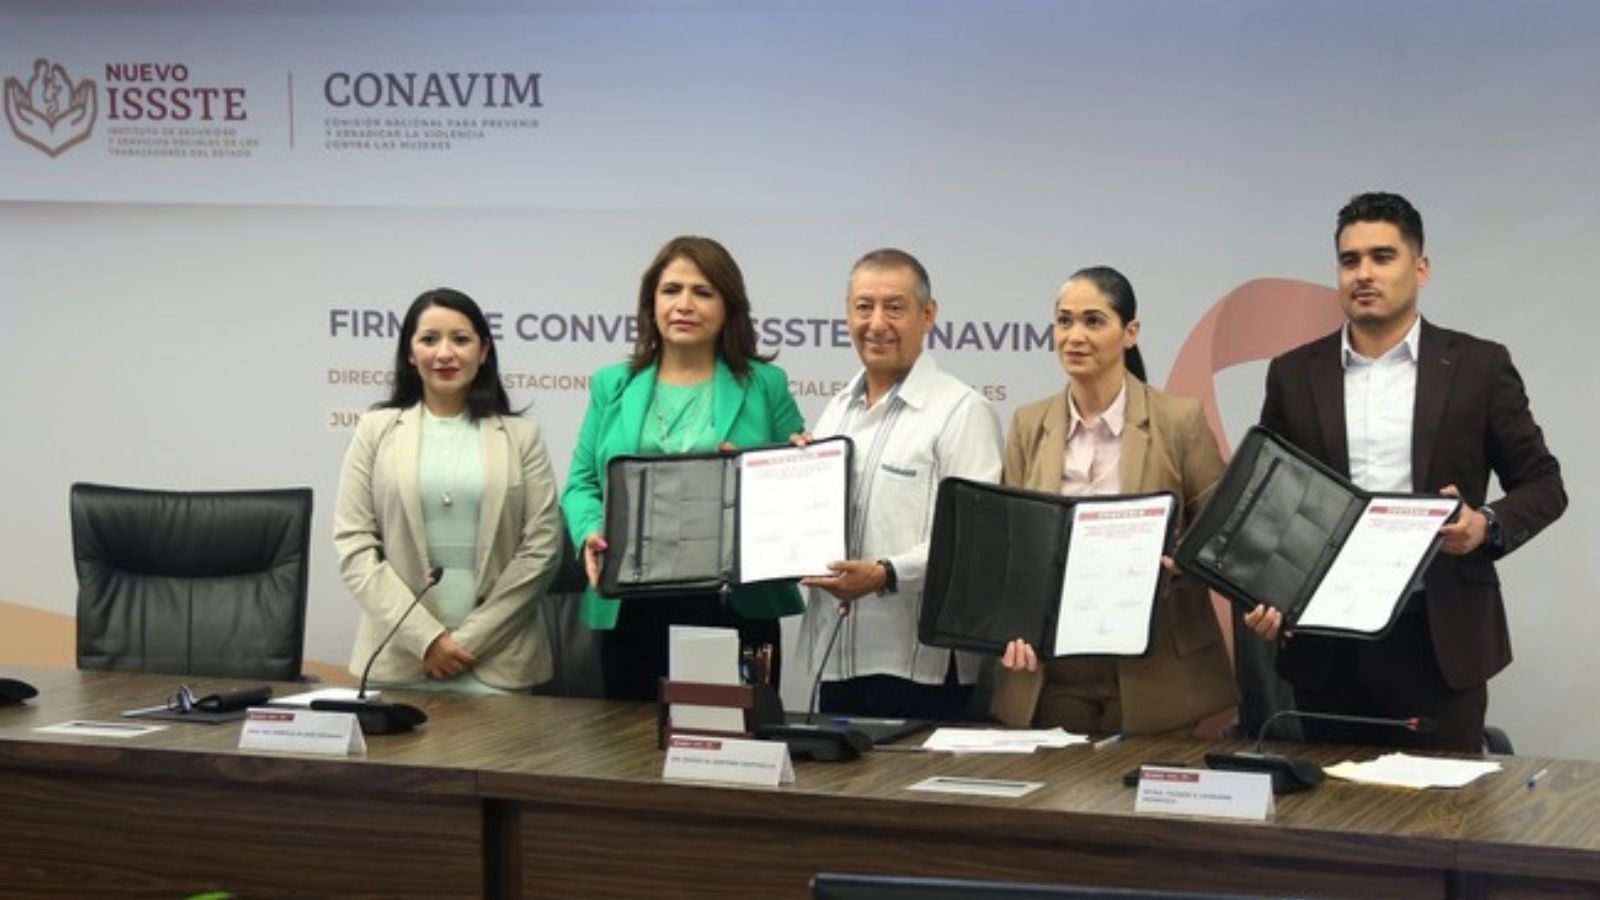 Conavim e Issste firman convenio para prevenir y atender violencias contra mujeres y niñas